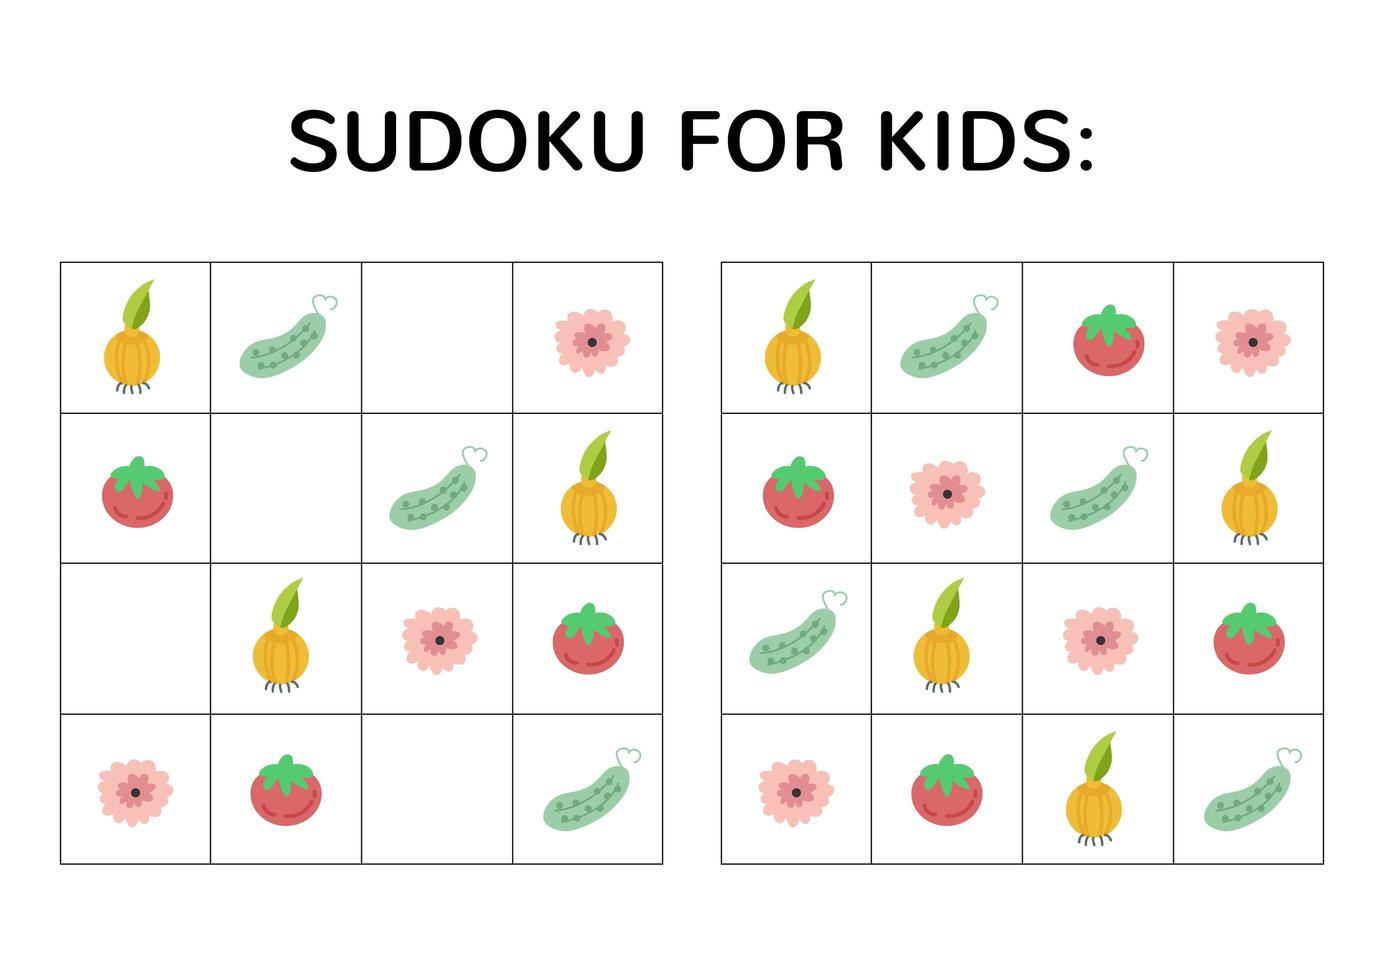 gioco di sudoku per bambini con immagini carine. vettore